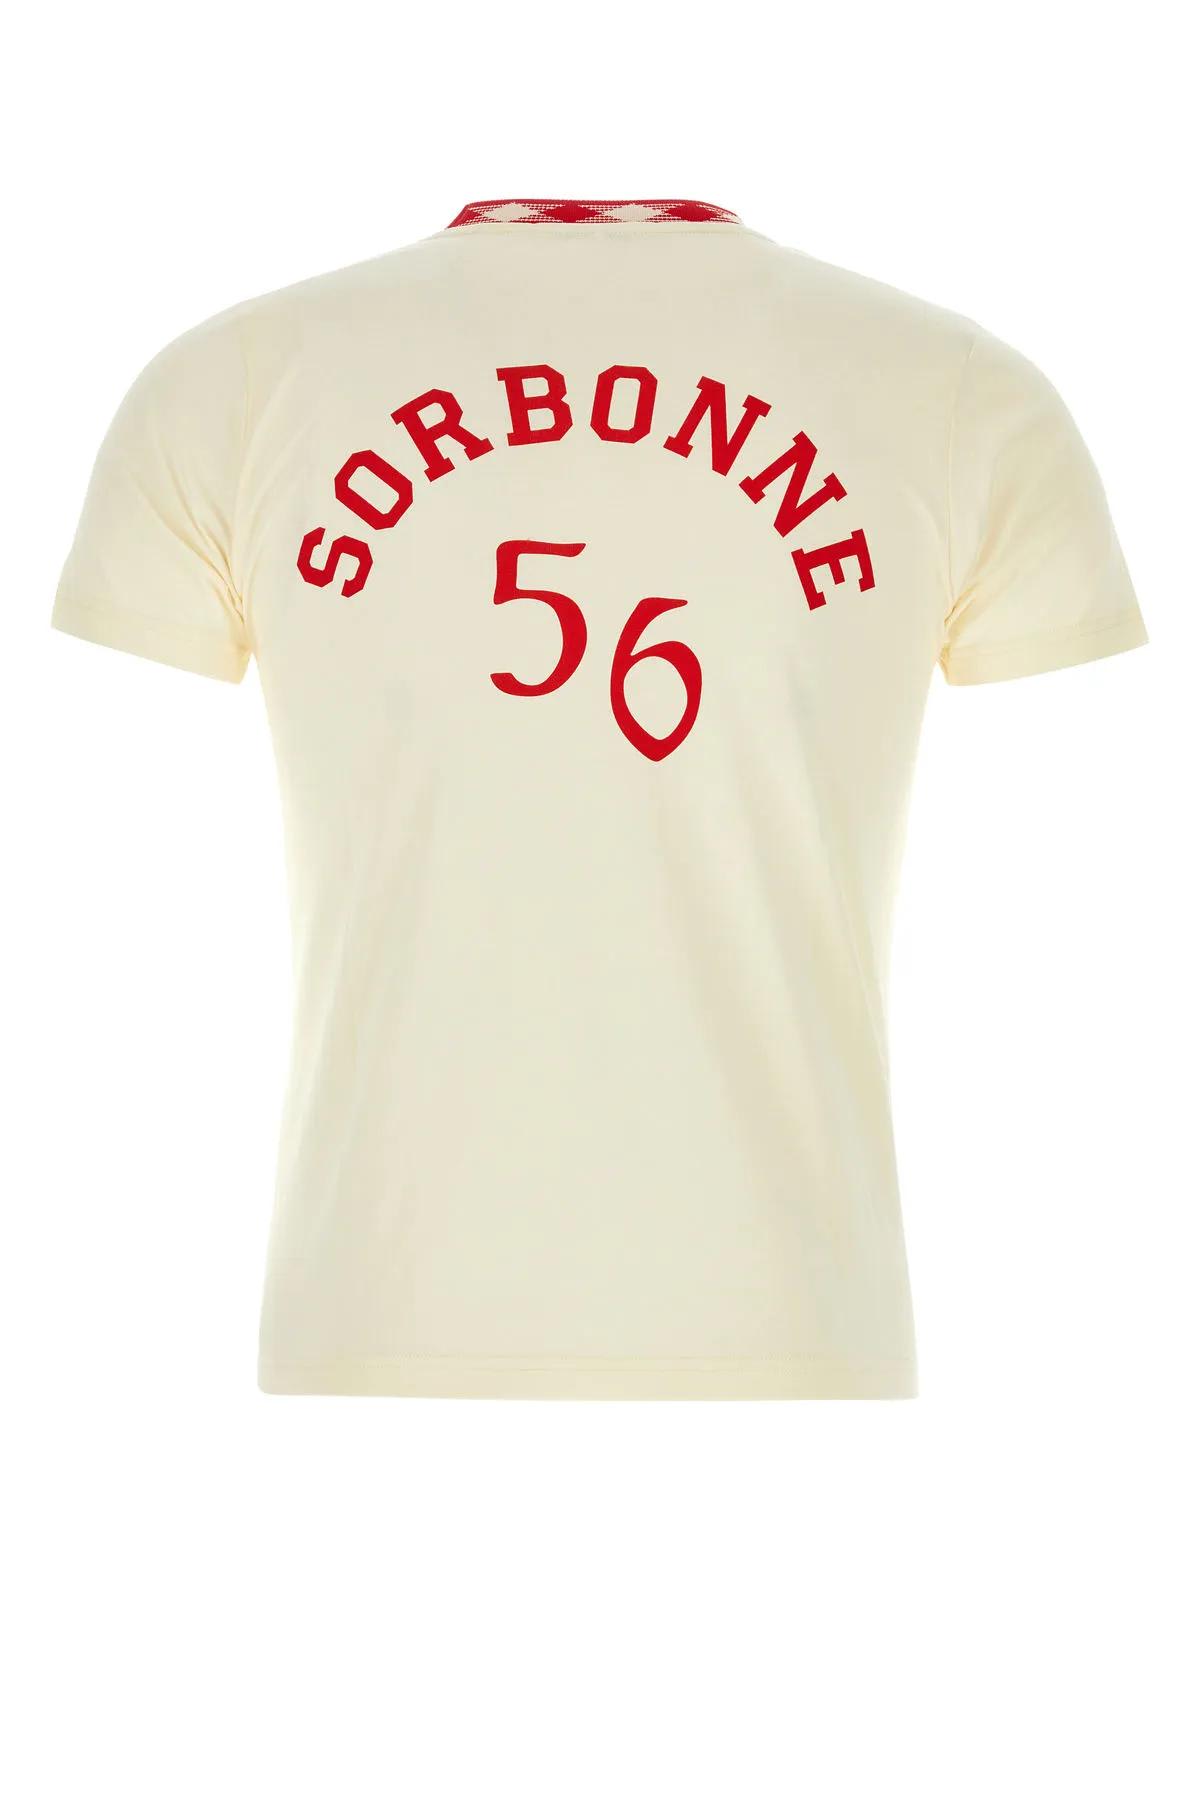 Shop Wales Bonner Ivory Cotton Sorbonne 56 T-shirt